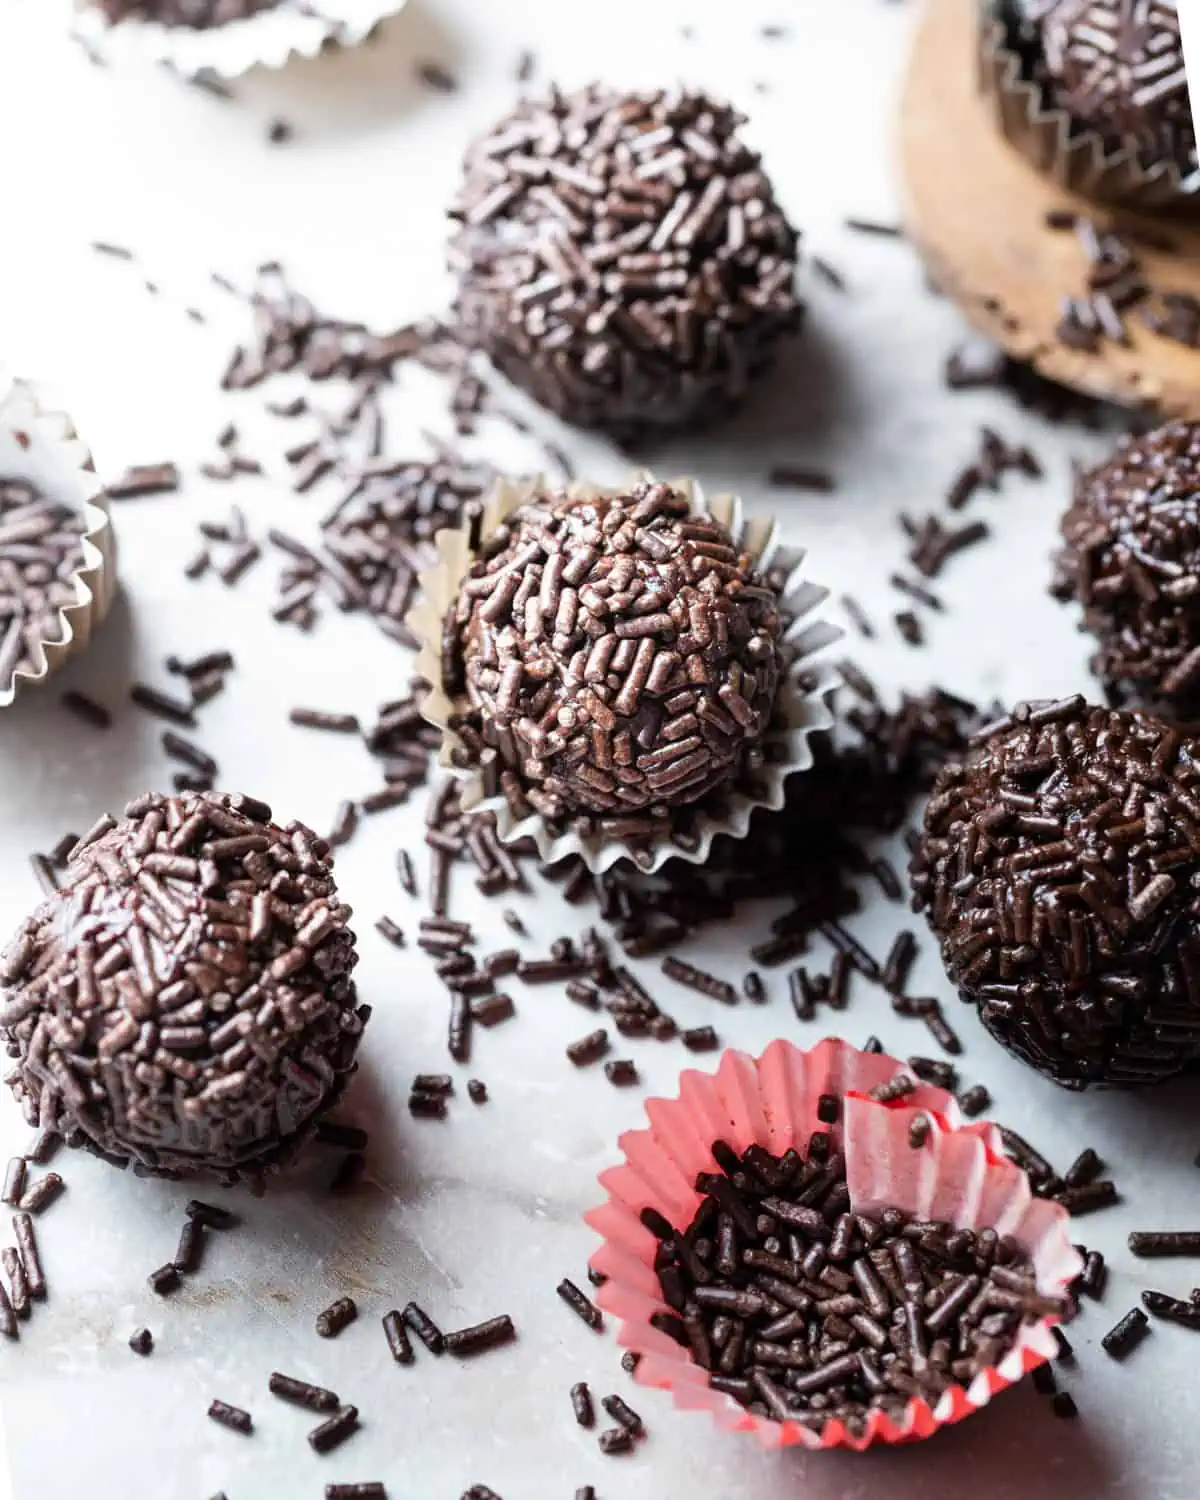 Vegan fudge balls in mini cupcake liners sitting on a countertop.